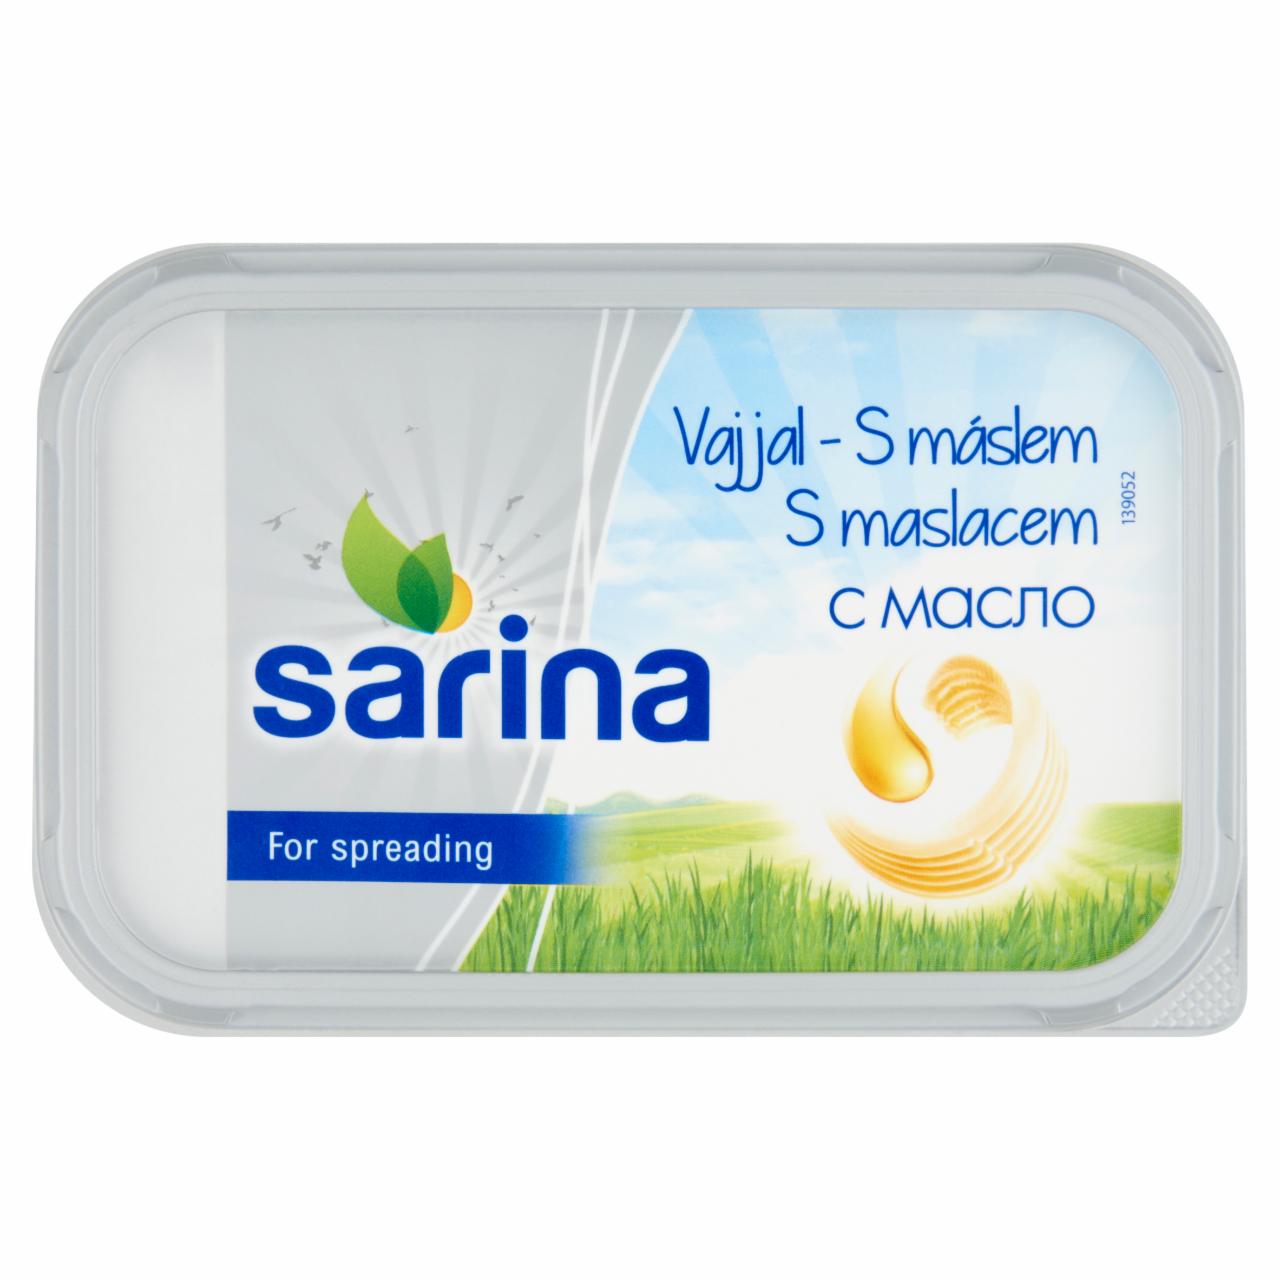 Képek - Sarina Light margarin 400 g